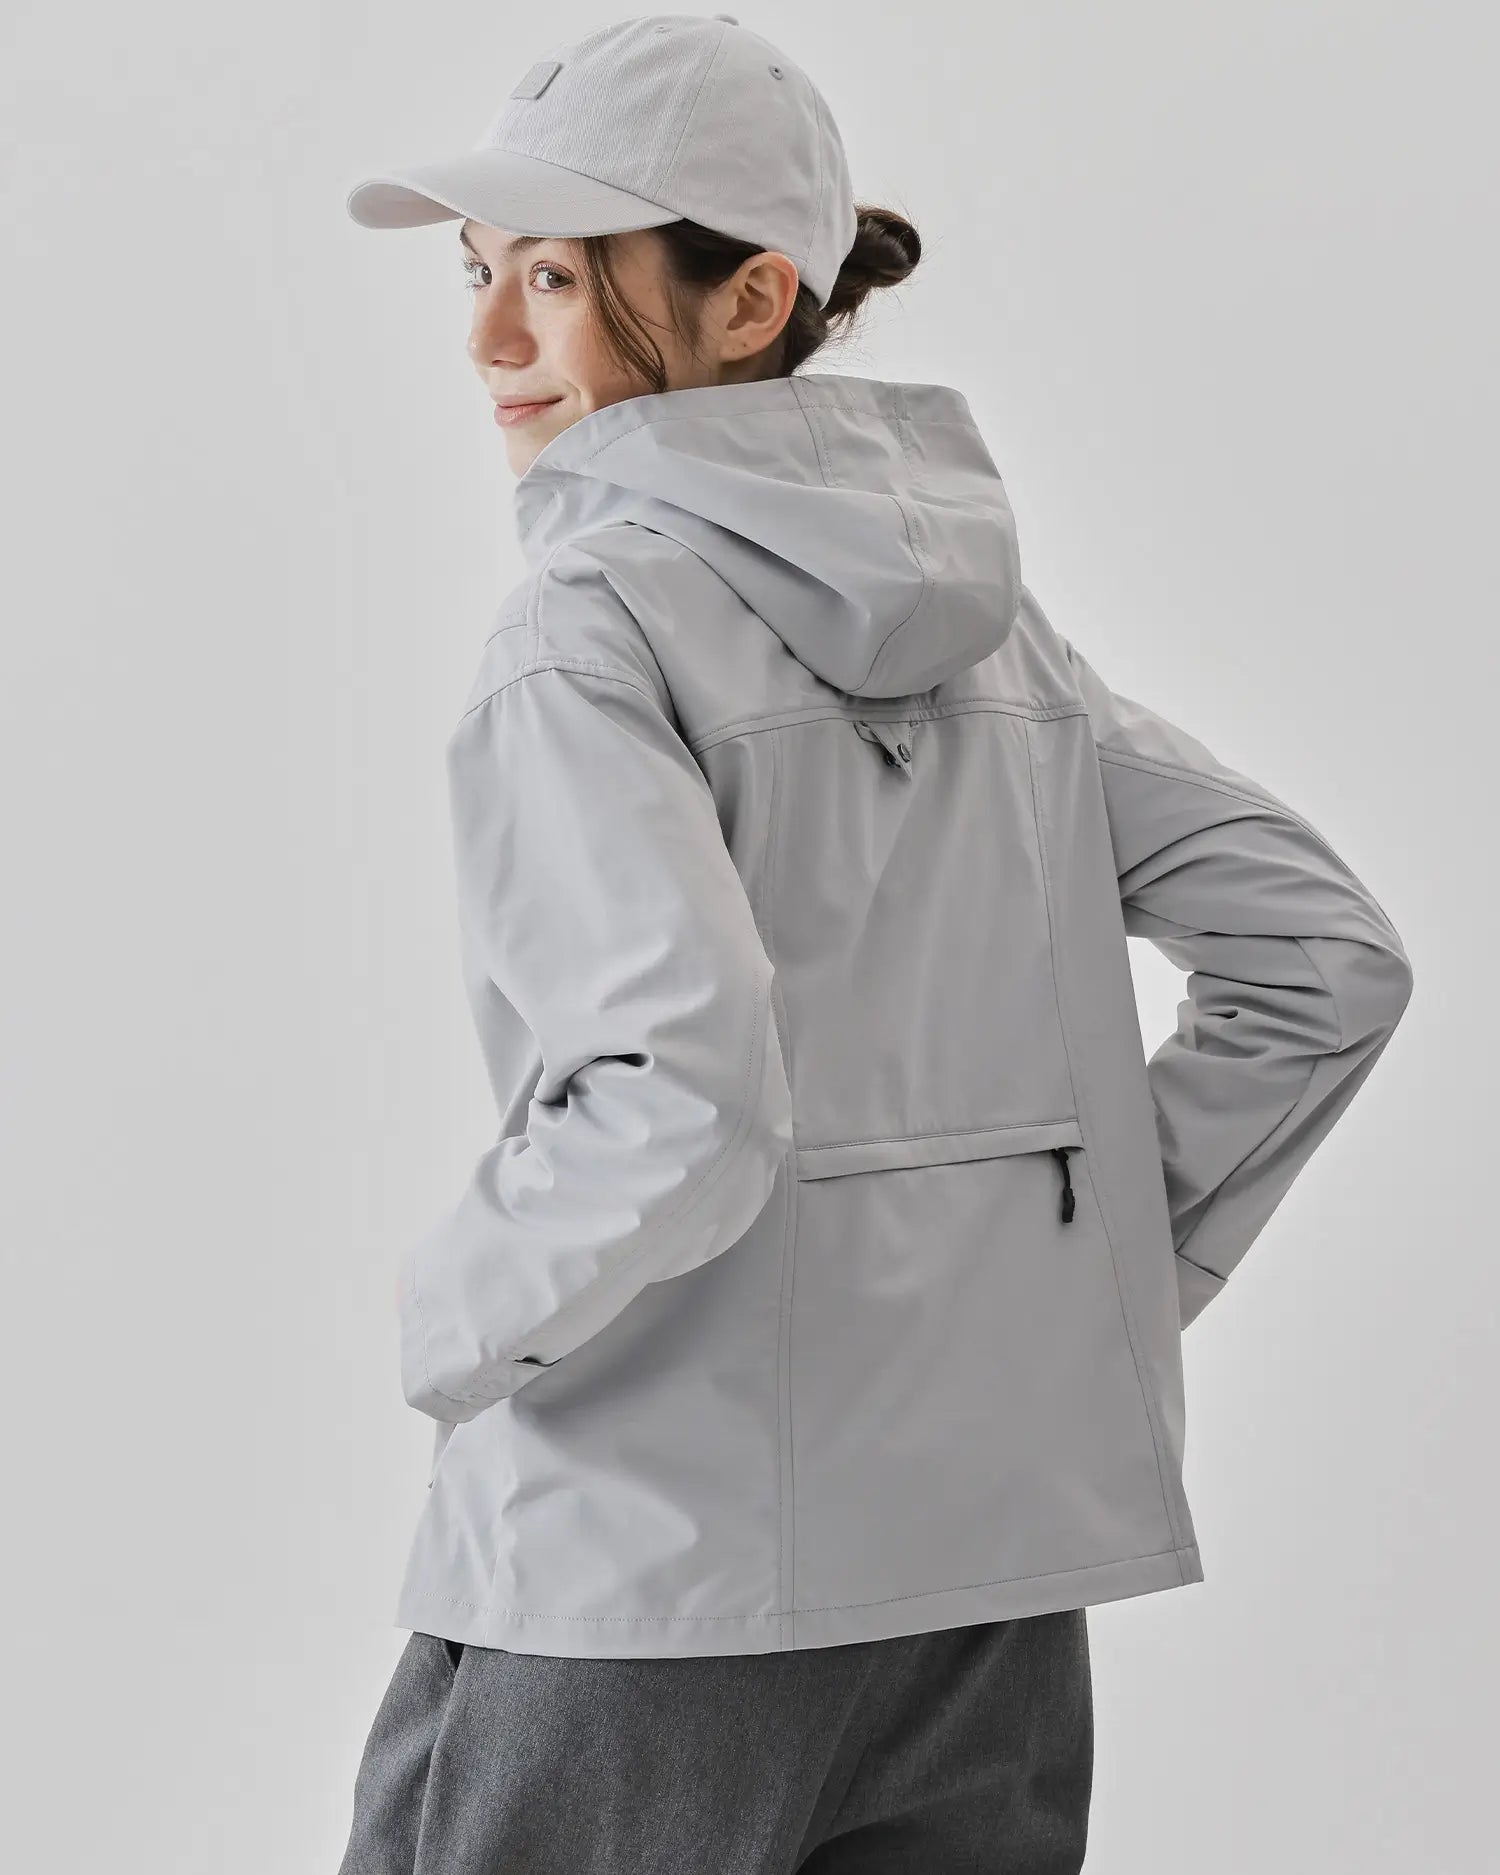 Women's Sports Jacket in Gray 05 #gray